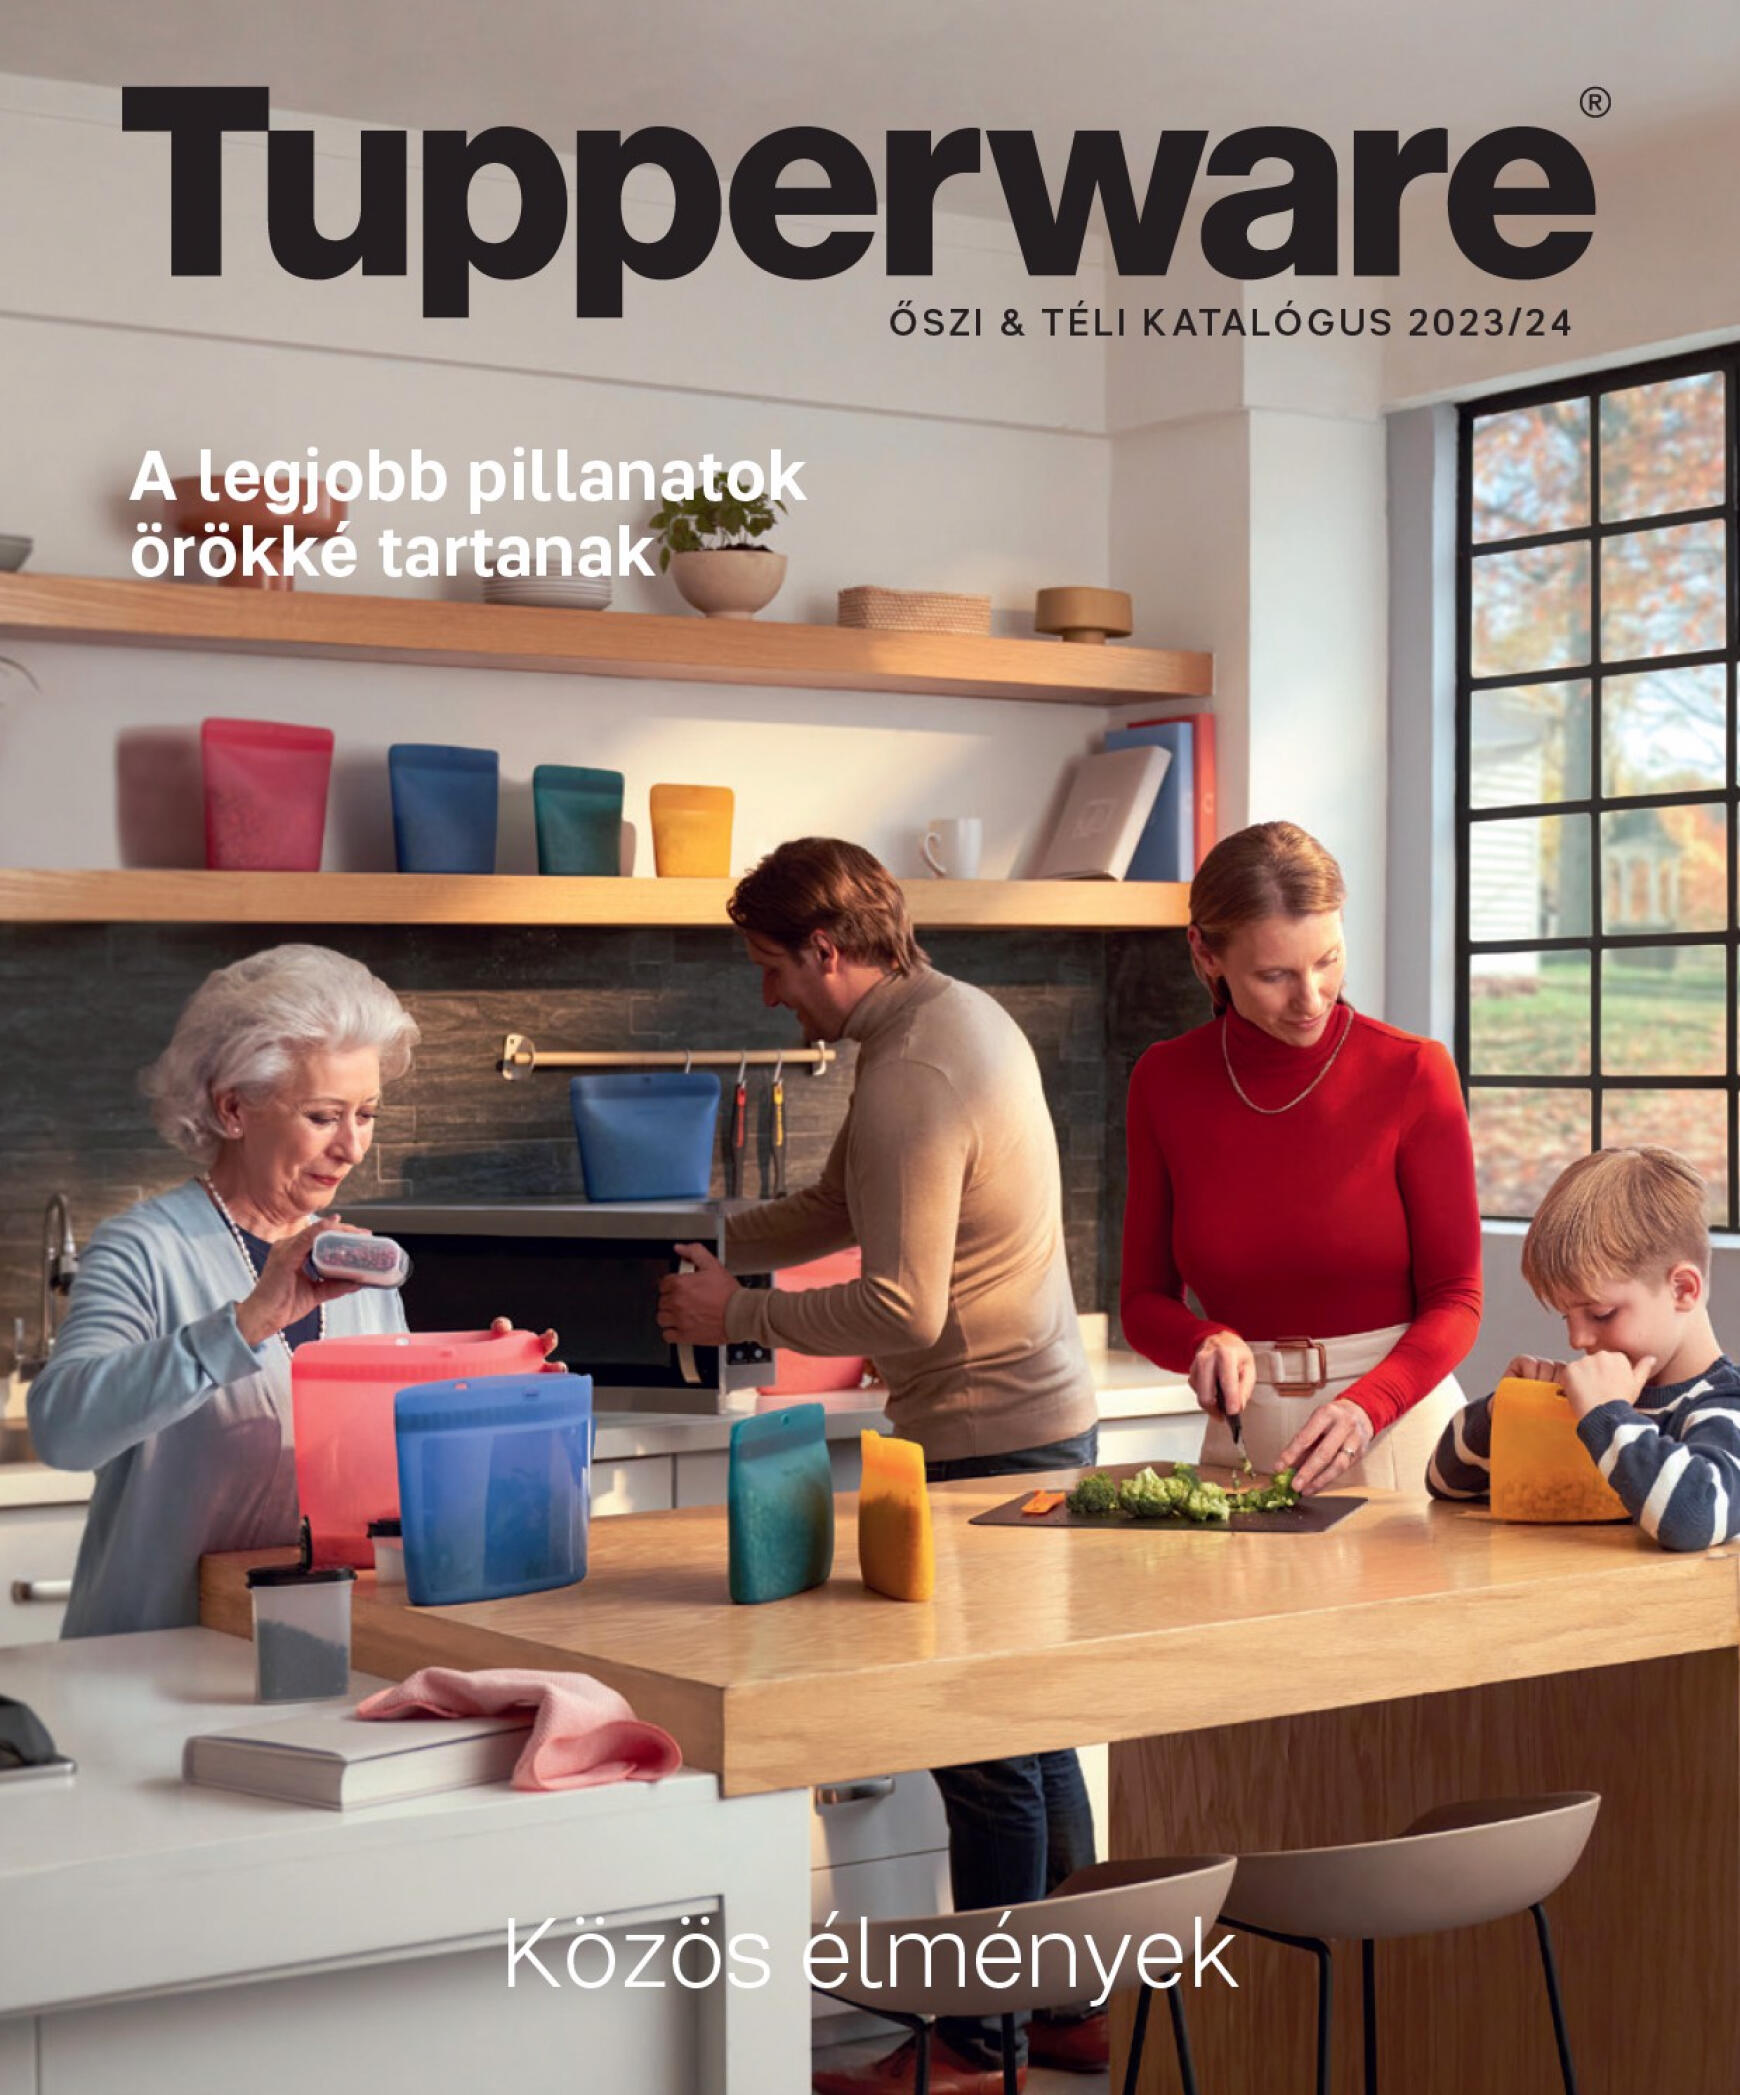 tupperware - Tupperware - ŐSZI & TÉLI KATALÓGUS 2023/24 dátumtól érvényes 2023.11.27.